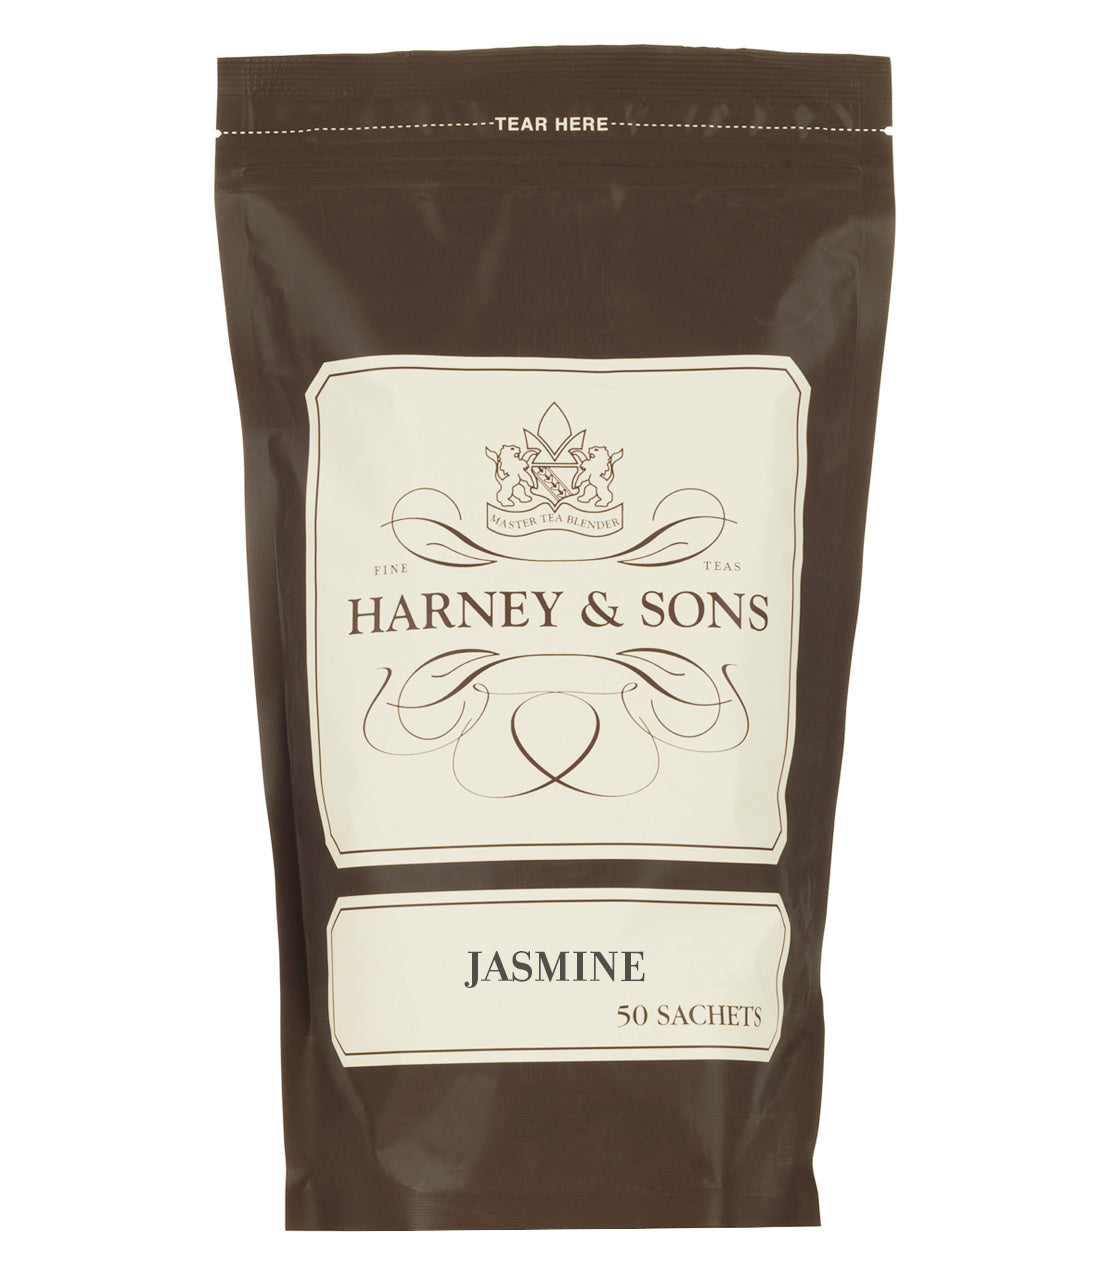 Jasmine Tea - Sachets Bag of 50 Sachets - Harney & Sons Fine Teas